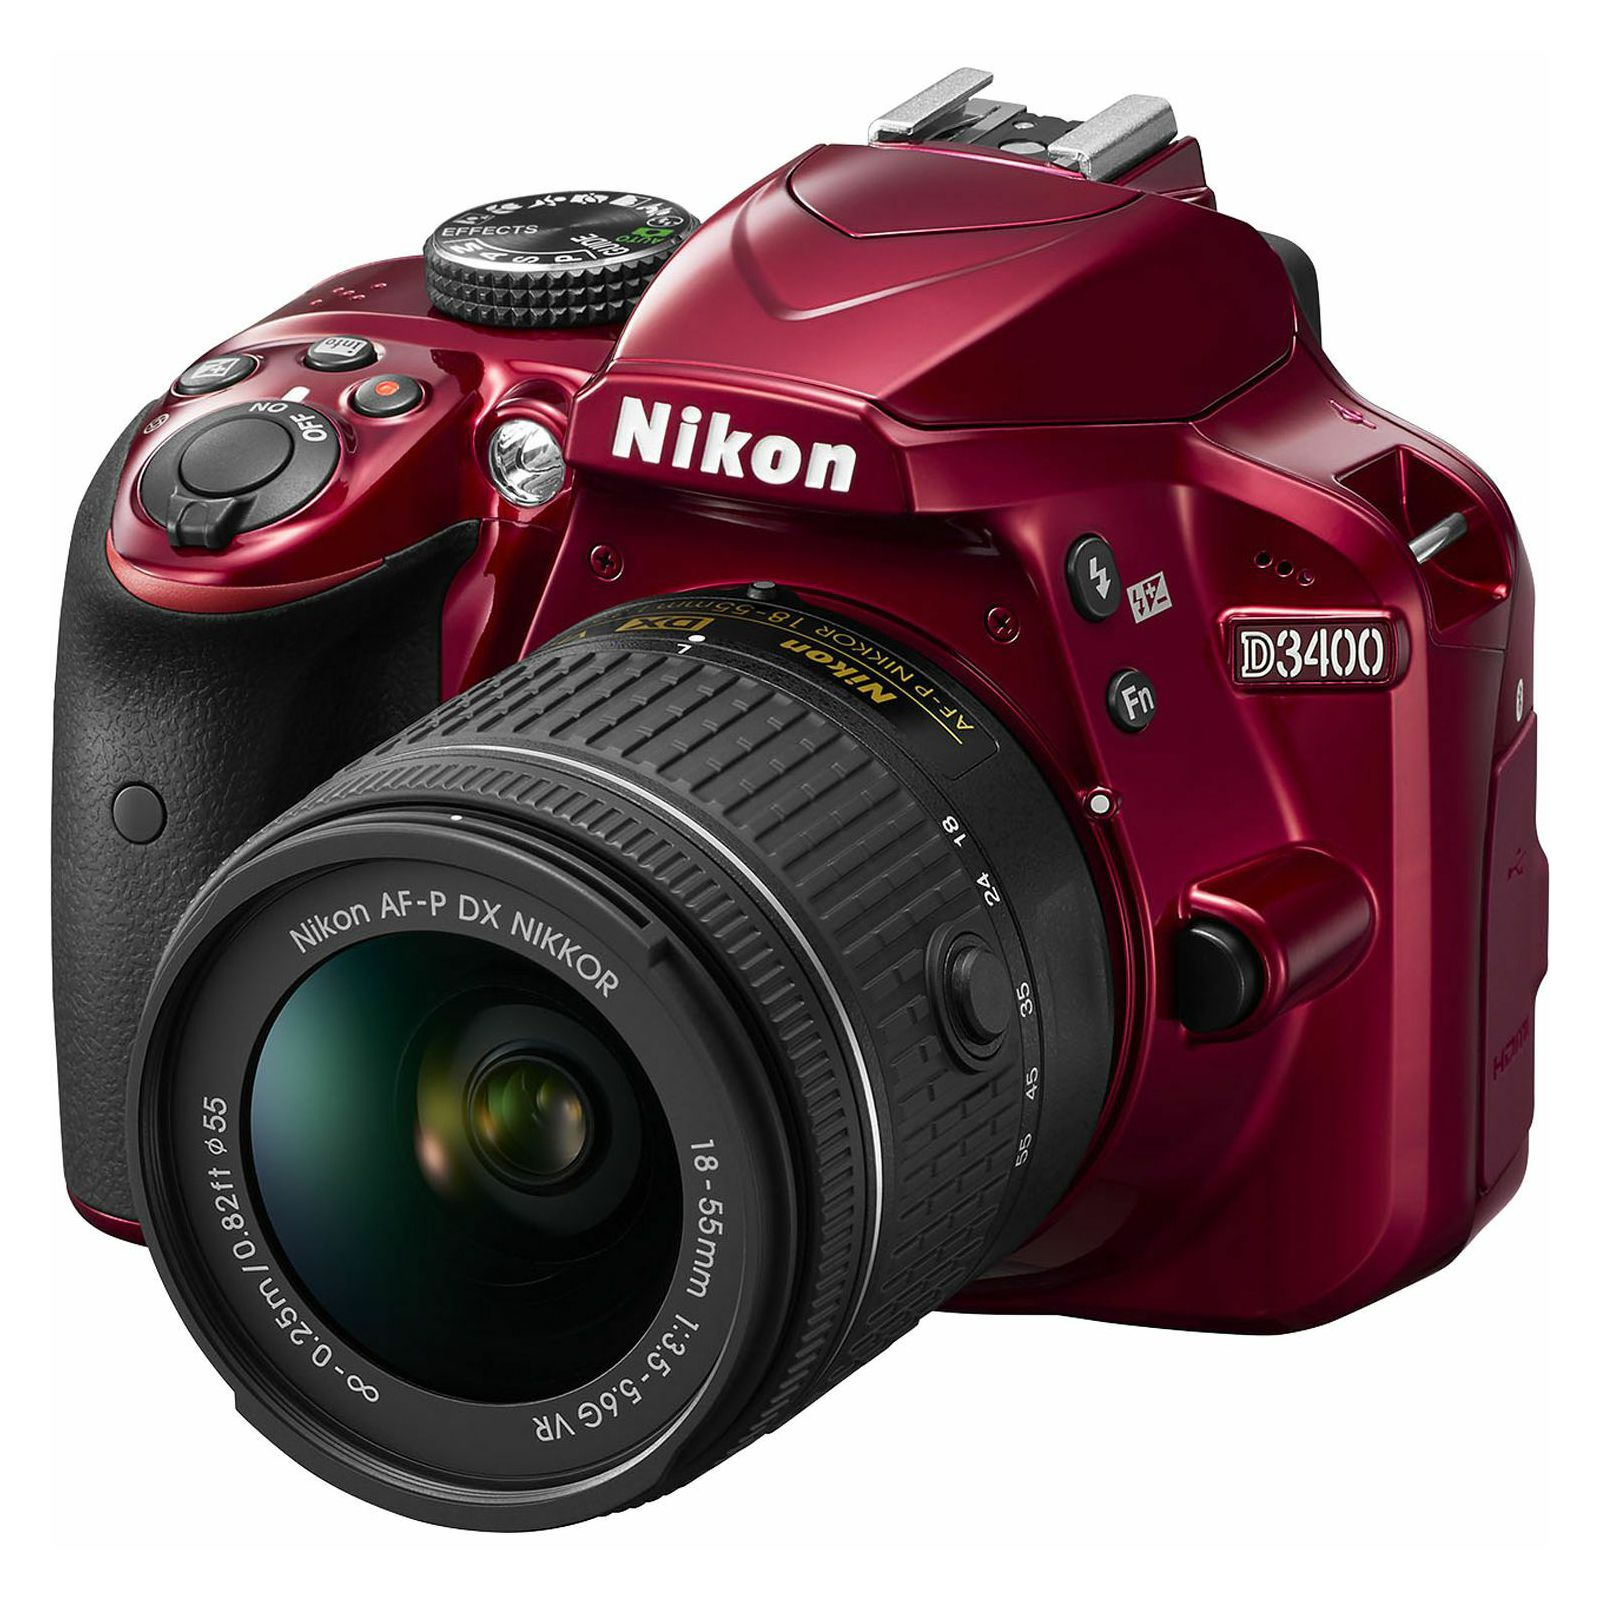 Nikon D3400 + AF-P 18-55VR Red KIT DSLR digitalni fotoaparat i objektiv AF-P DX 18-55mm f/3.5-5.6G VR (VBA491K001)